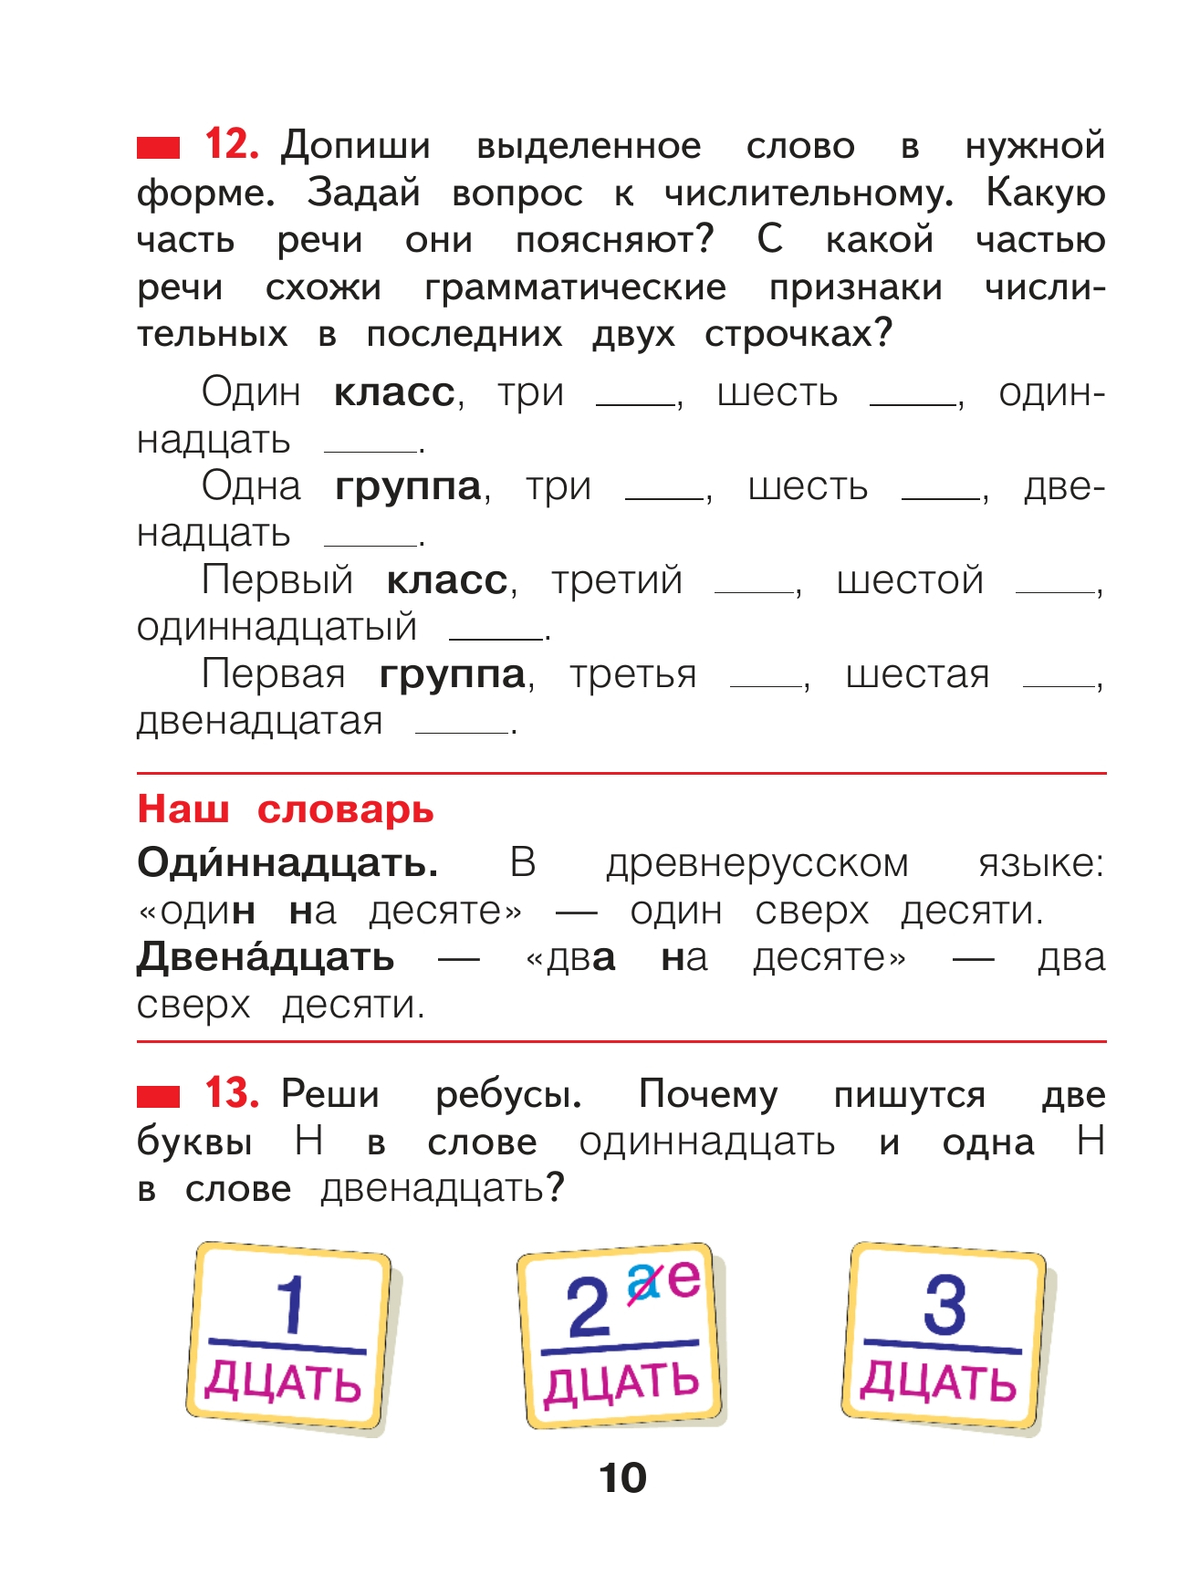 Русский язык. 2 класс. Учебное пособие В 2 ч. Часть 2 5